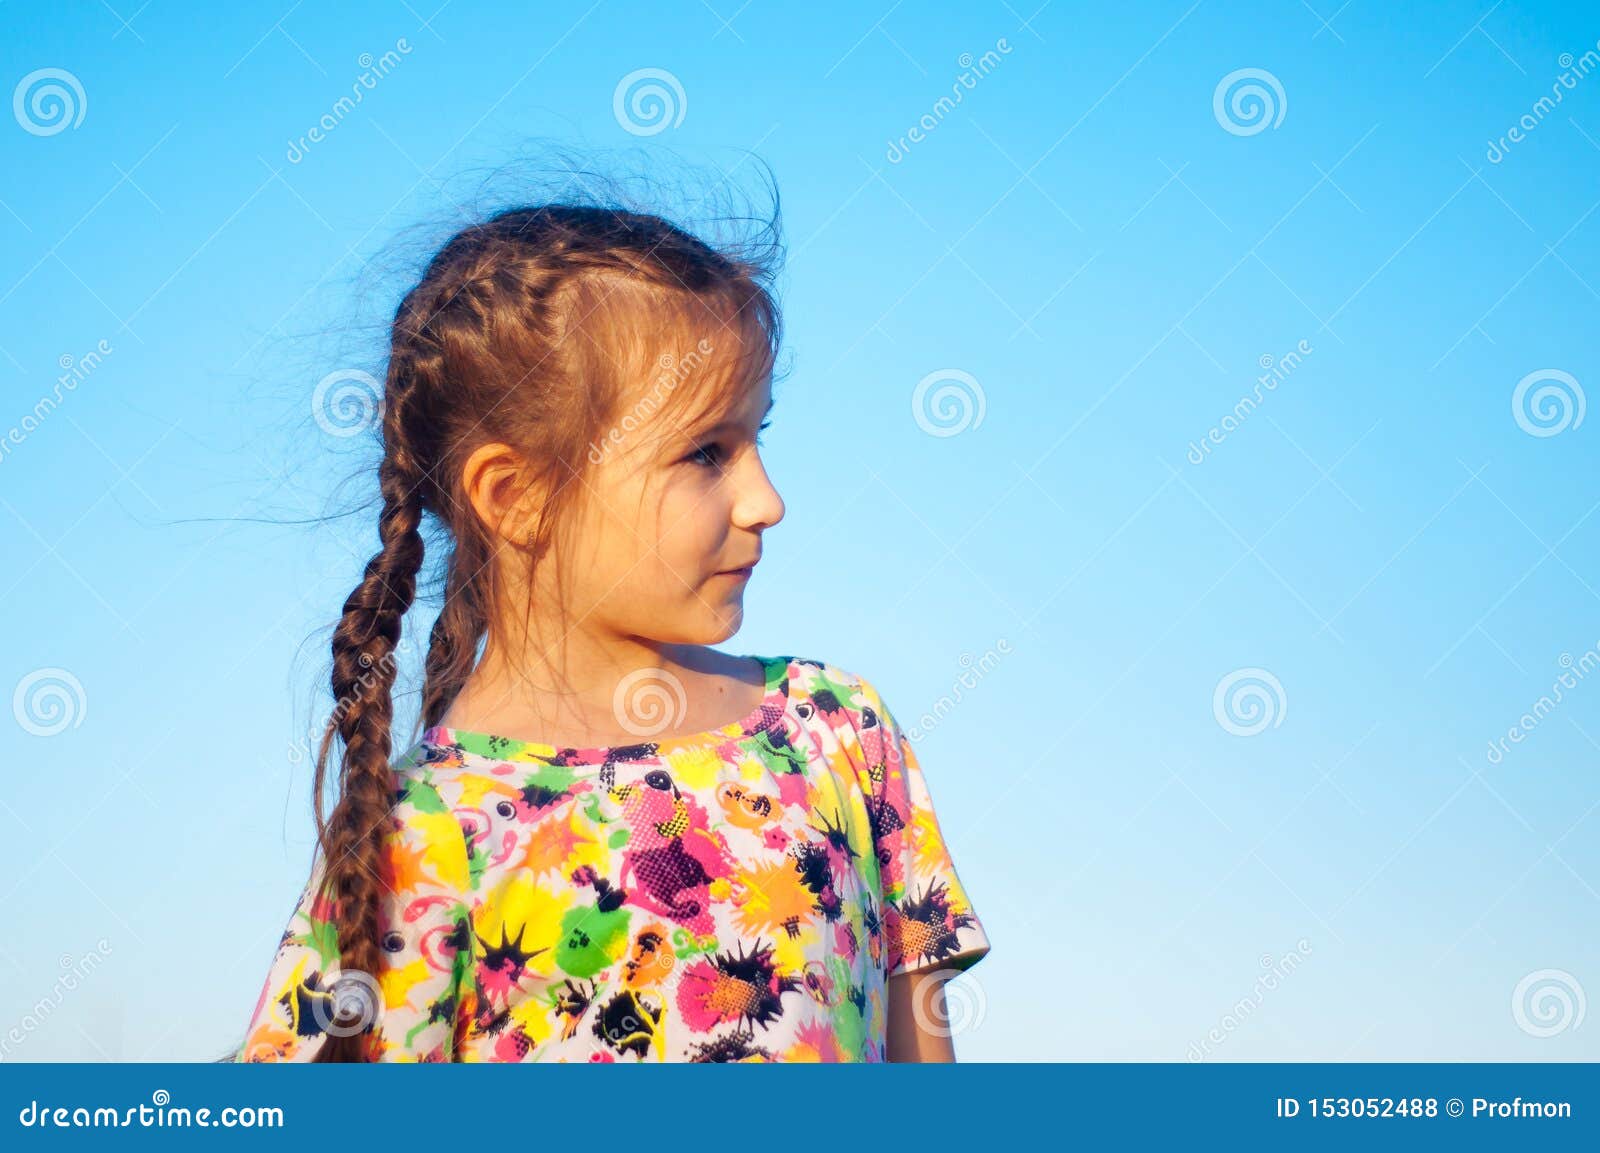 泳装的被晒黑的小女孩 库存图片. 图片 包括有 童年, 查出, 火箭筒, 子项, 纵向, 人员, 相当 - 104023391